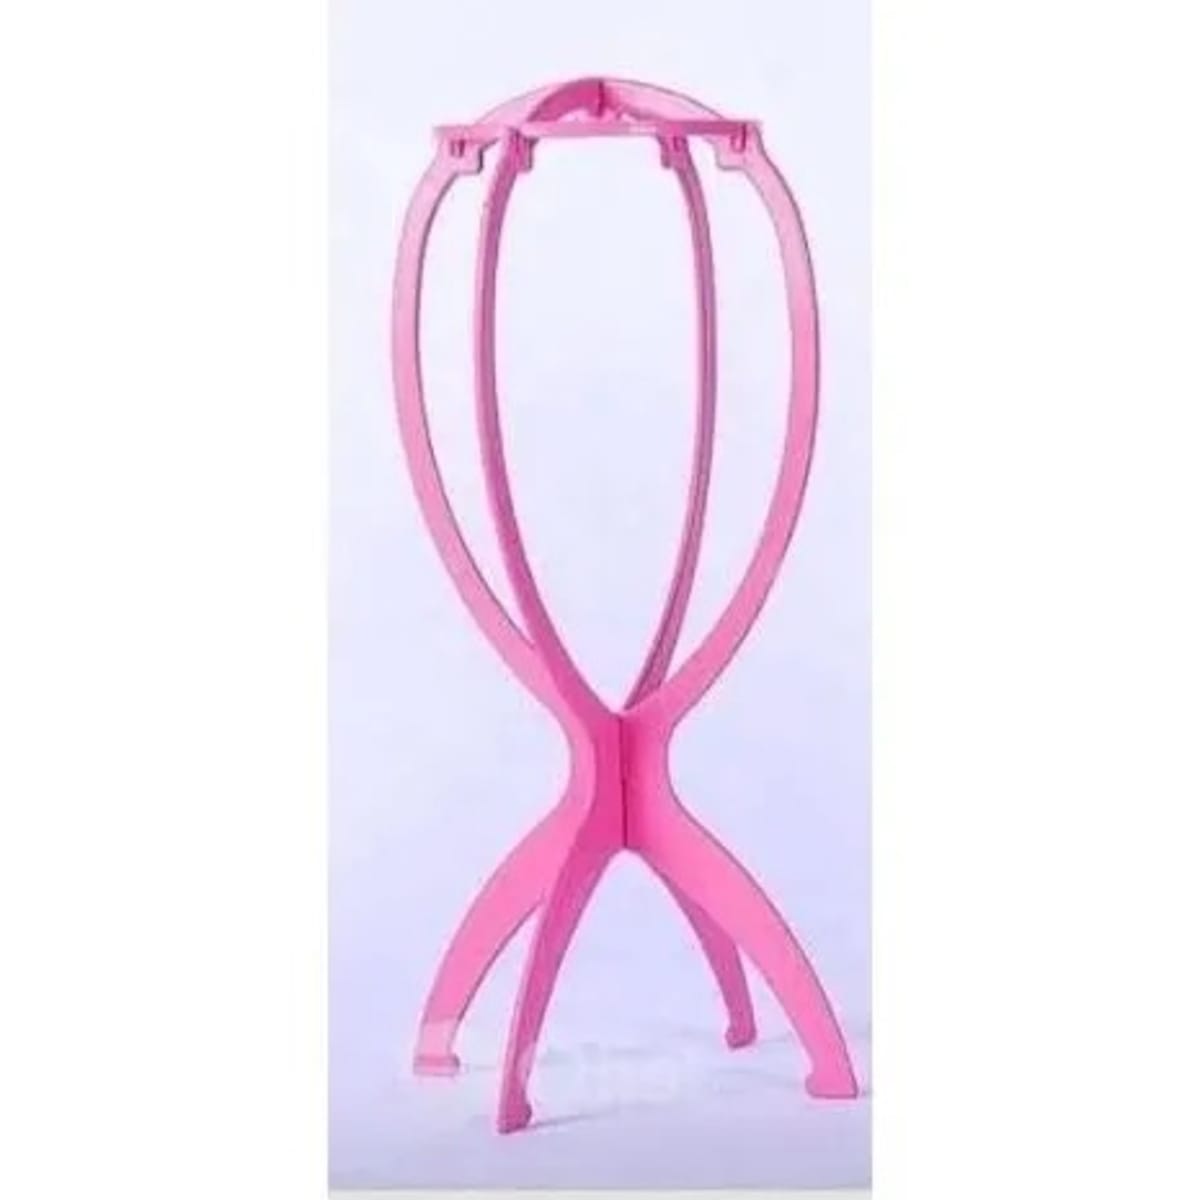 Wig Stand - Wig Holder (Pink) - KYUKCHIC